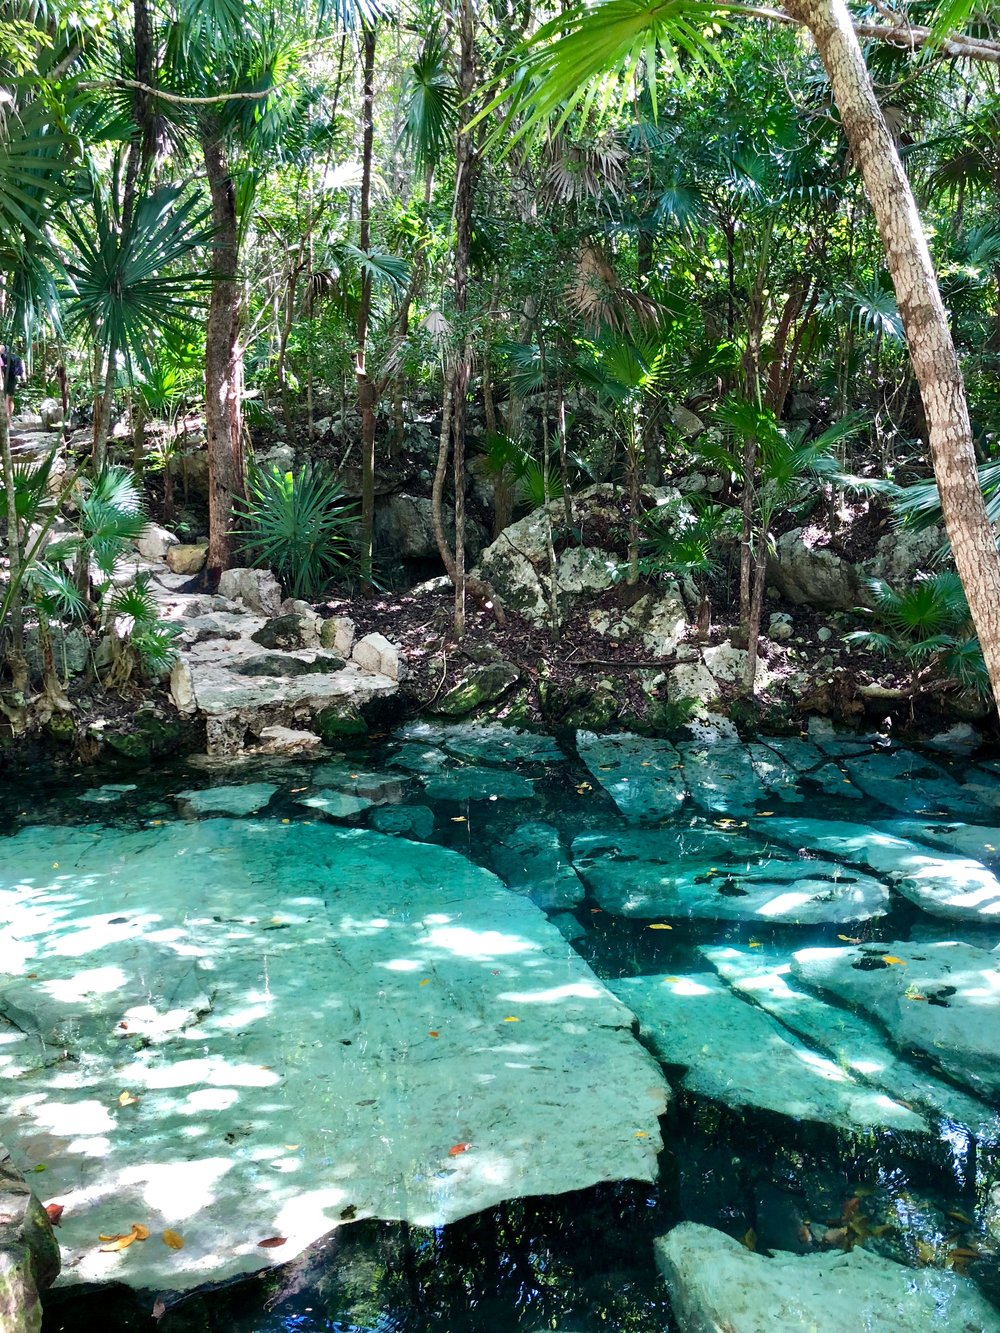 Cenote Azul located 30 minutes north of Tulum.